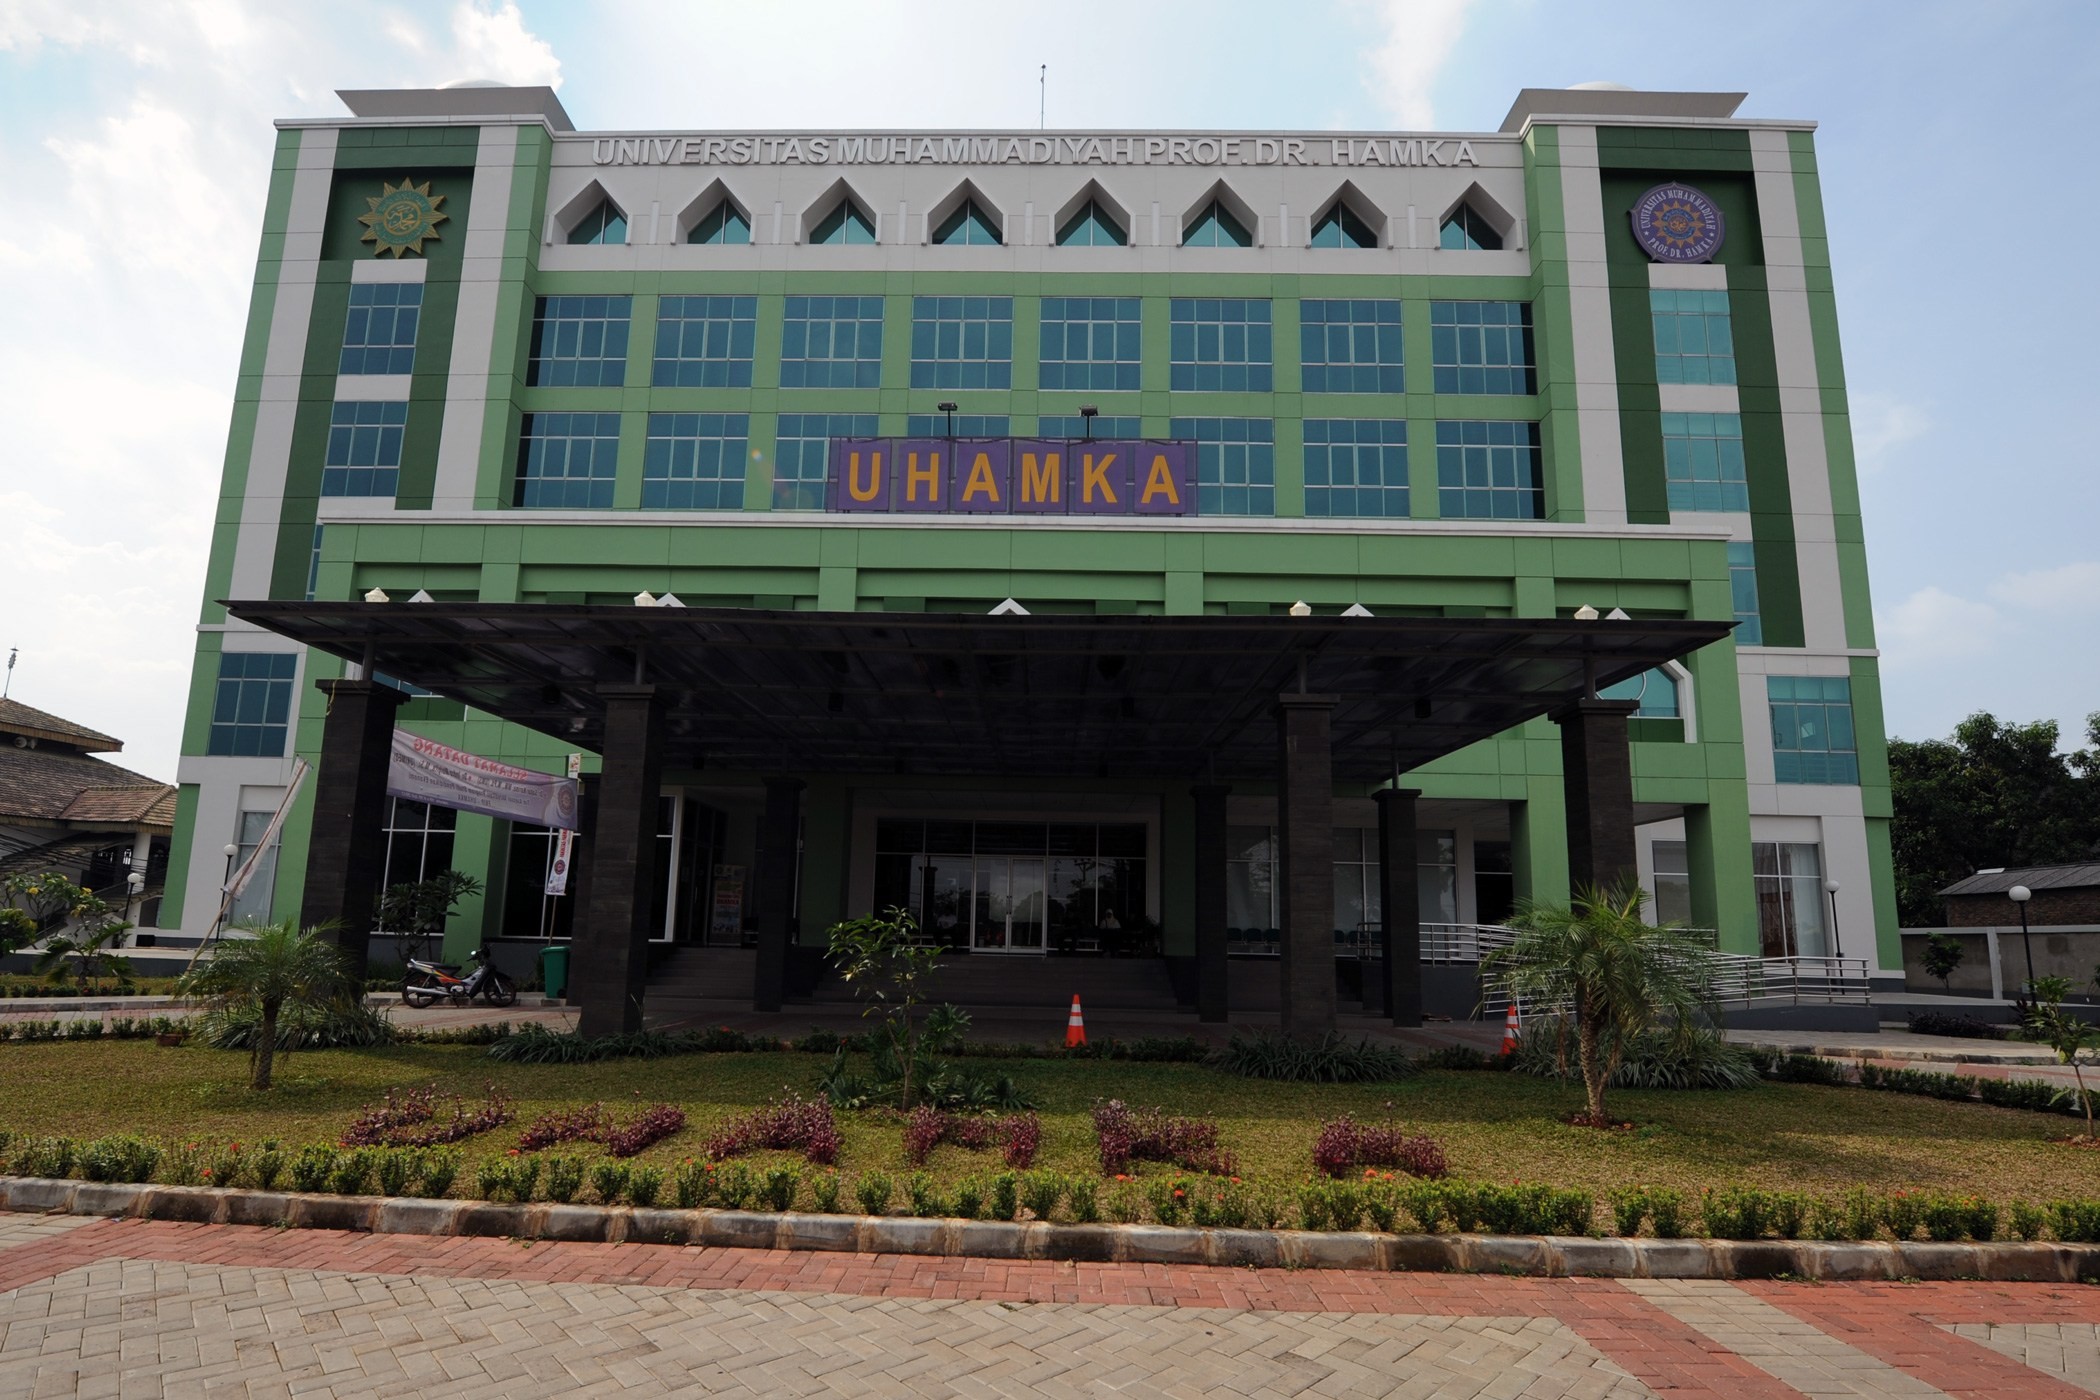 Universitas Muhammadiyah Prof. Dr. HAMKA